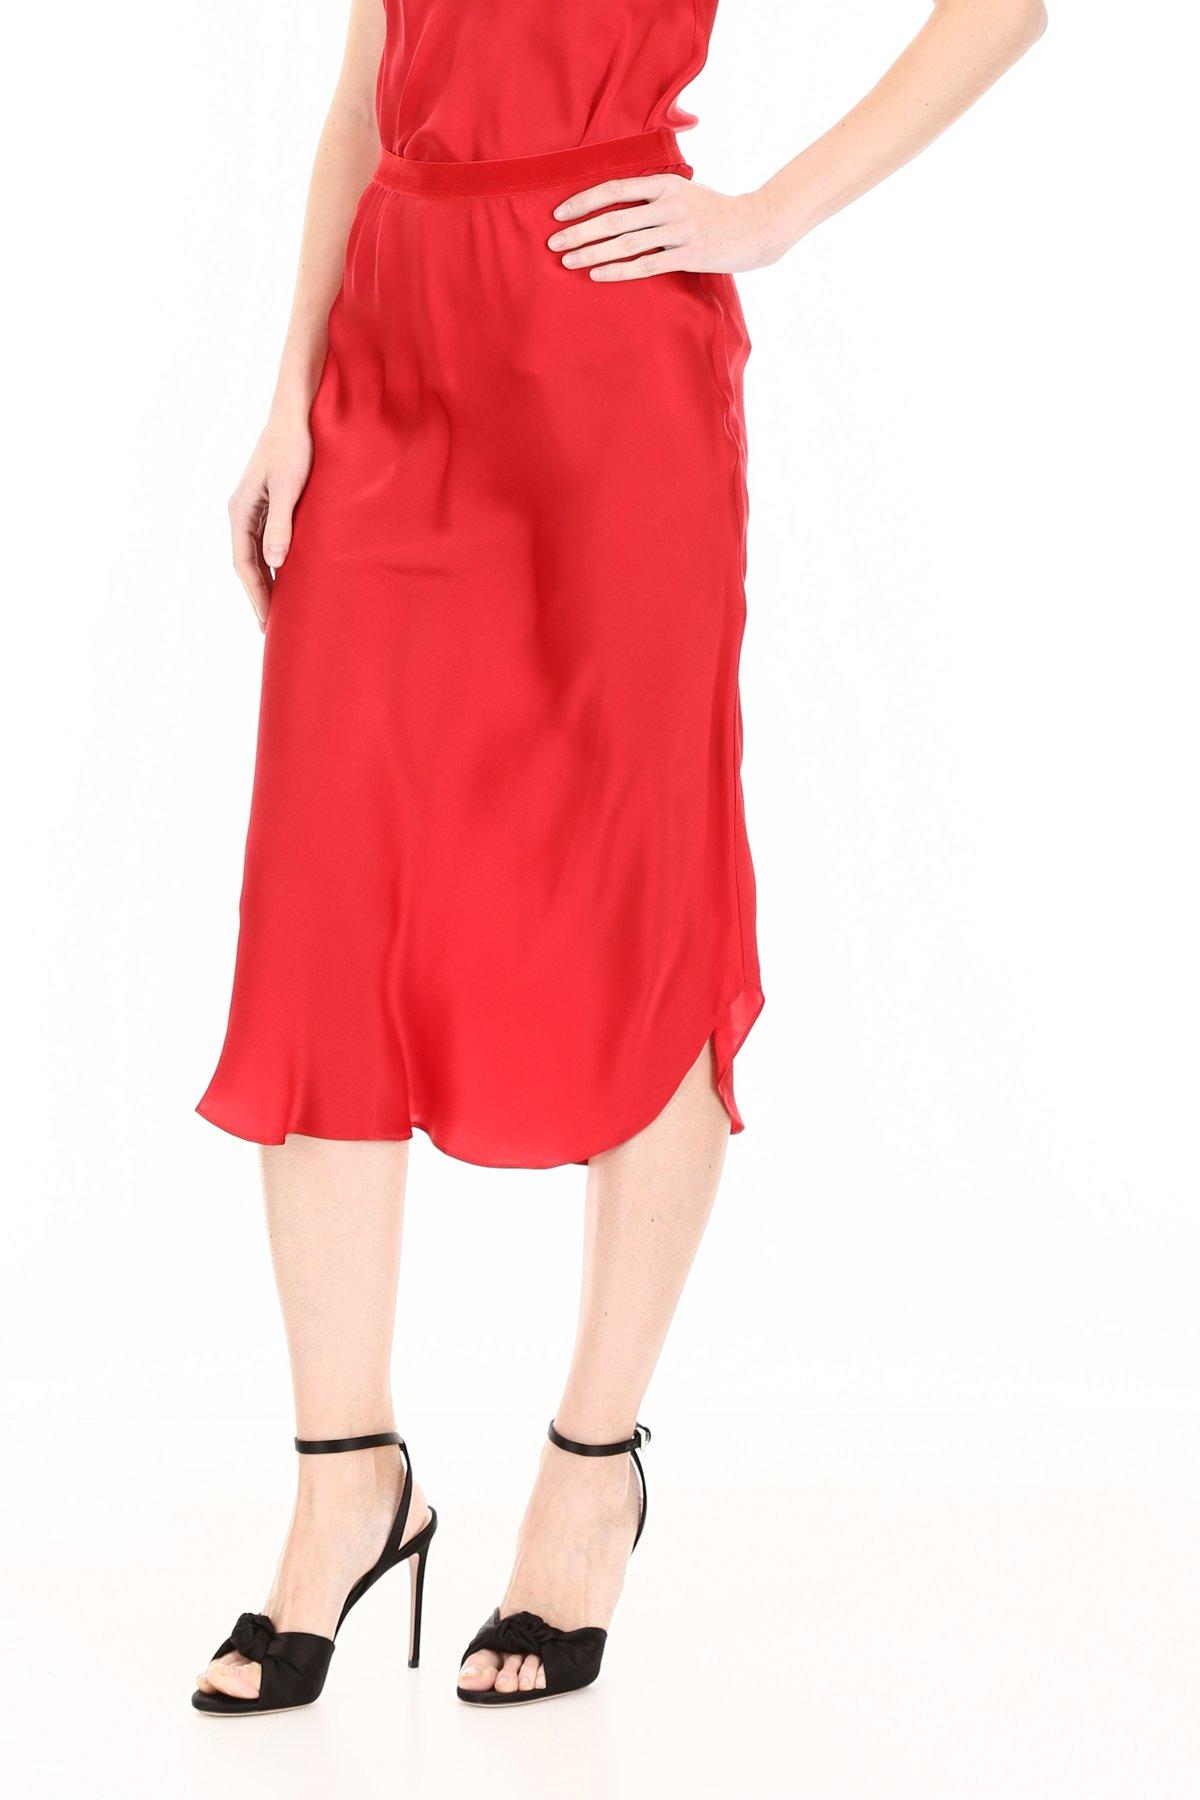 Mes Demoiselles Silk Nami Skirt in Red - Lyst